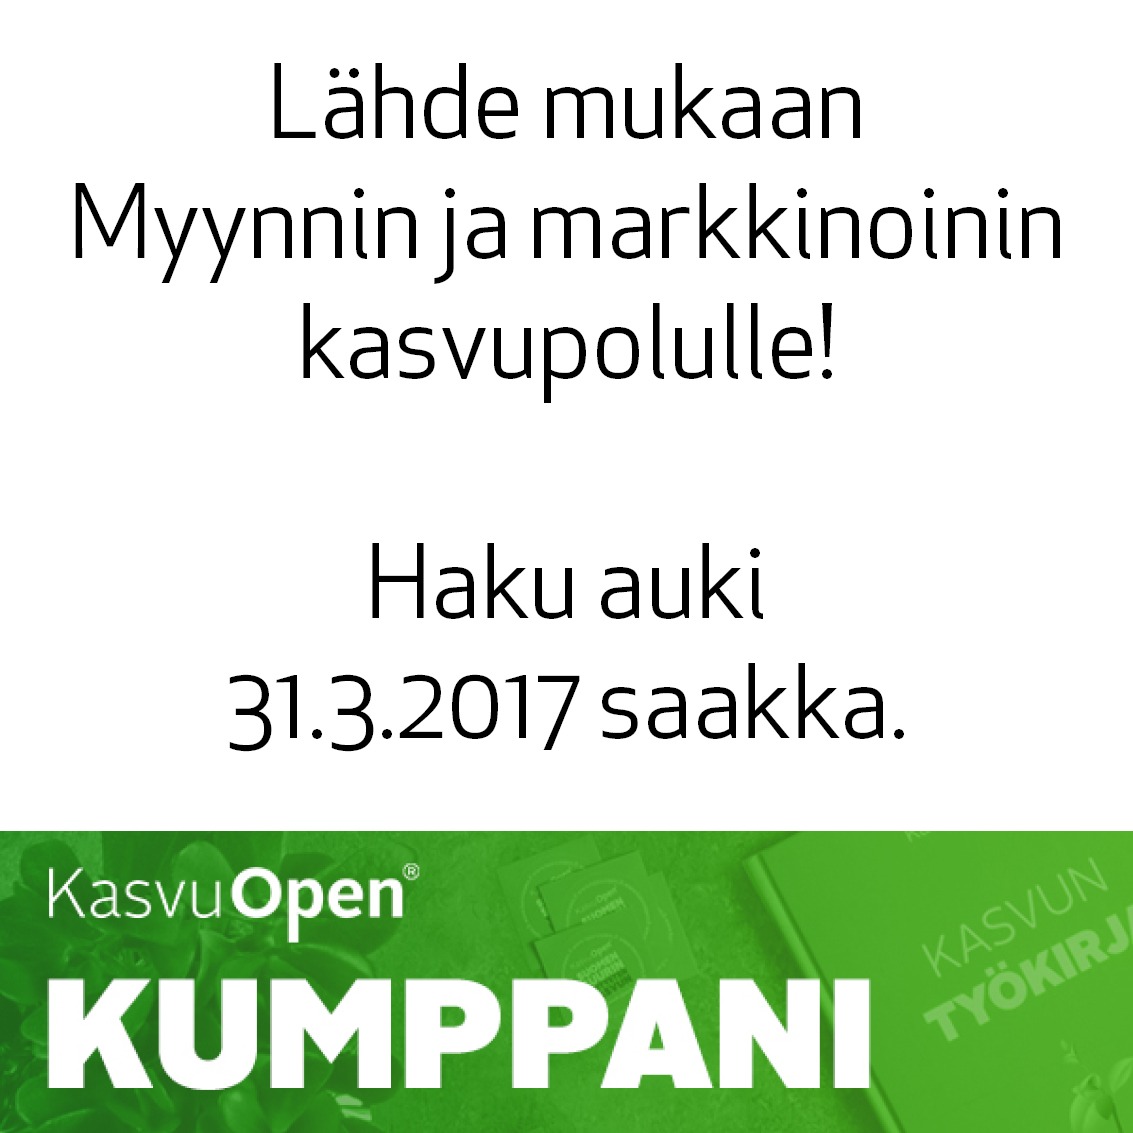 Mercuri on kumppanina mukana Kasvu Open 2017 Myynnin ja markkinoinnin kasvupolulla